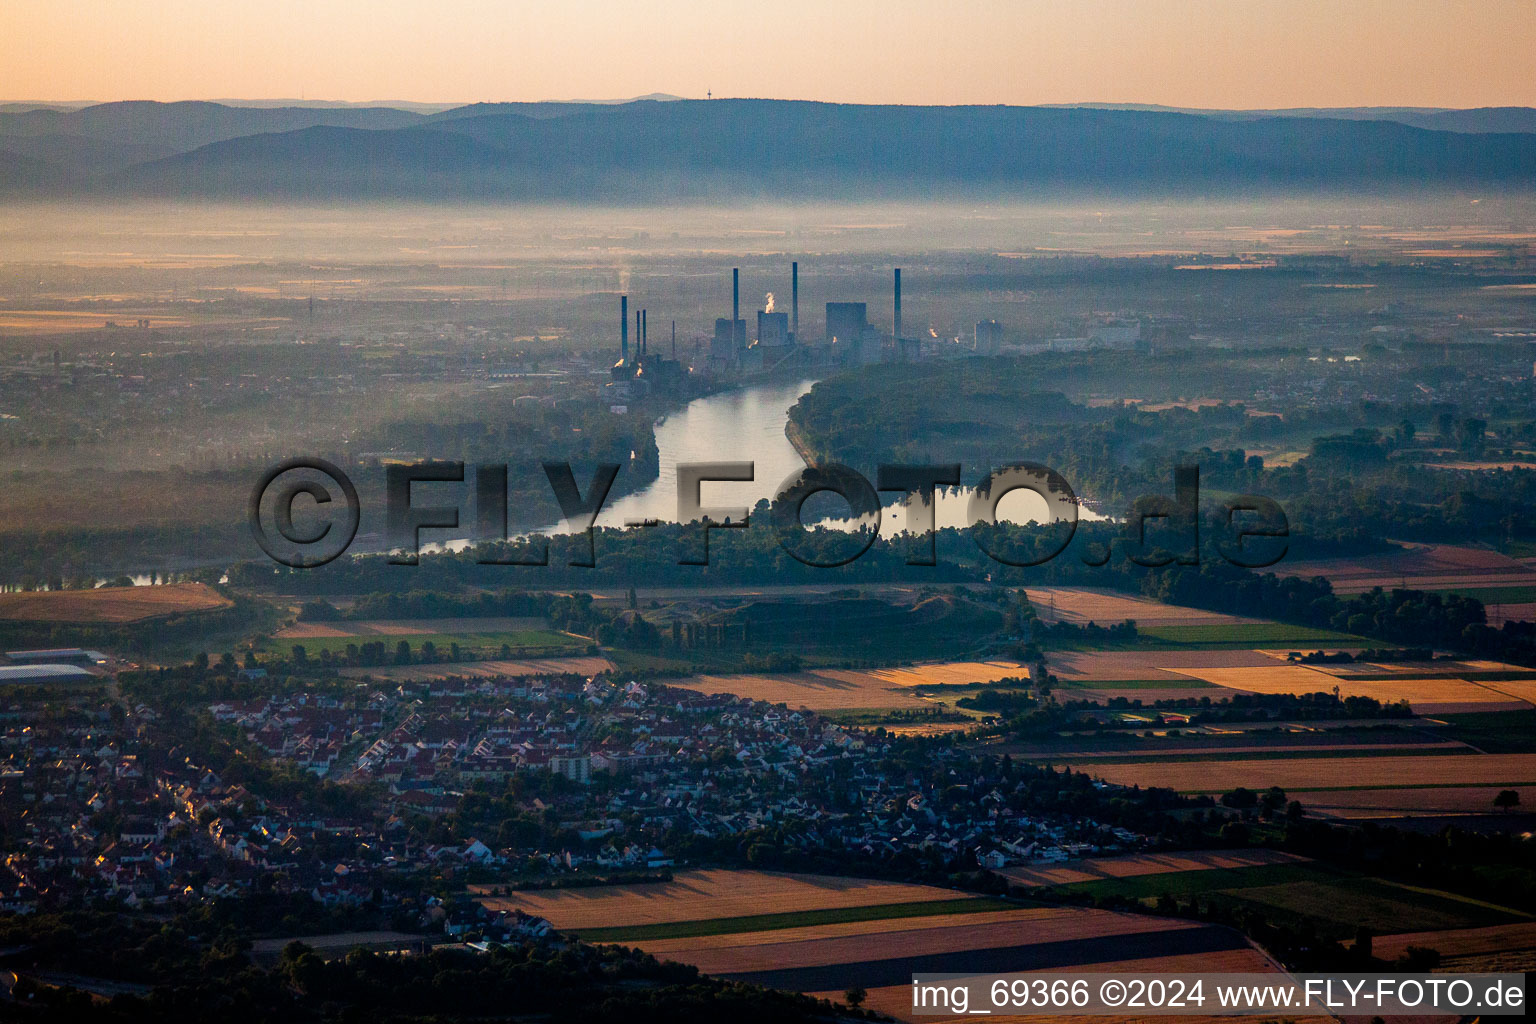 Vue aérienne de Ambiance matinale sur la centrale électrique et les tours d'échappement de la grande centrale thermique Mannheim à le quartier Rheinau in Mannheim dans le département Bade-Wurtemberg, Allemagne